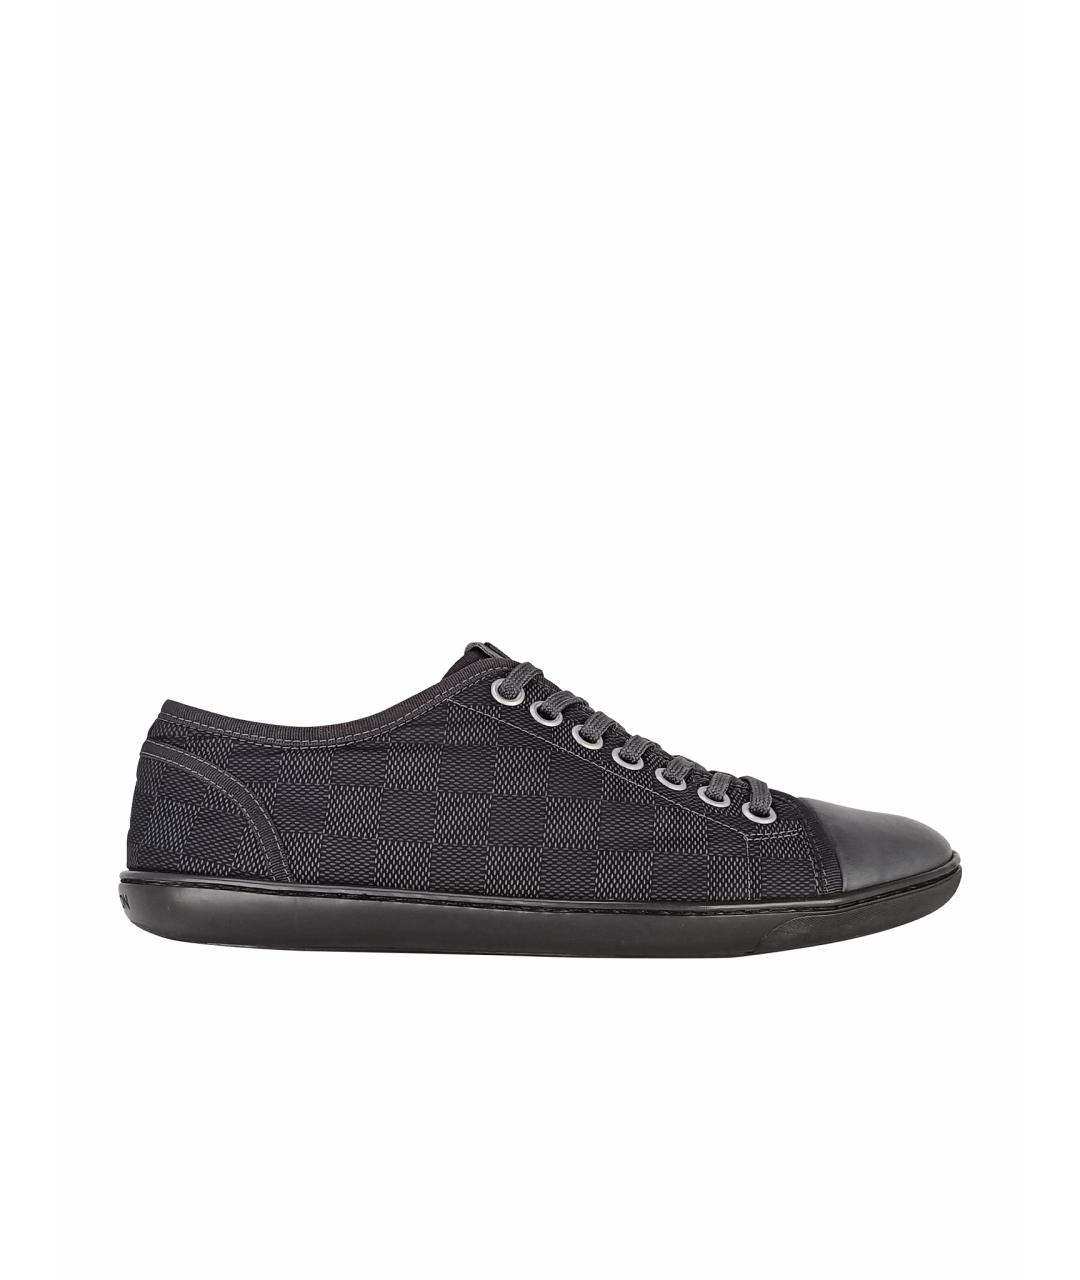 LOUIS VUITTON PRE-OWNED Черные текстильные низкие кроссовки / кеды, фото 1